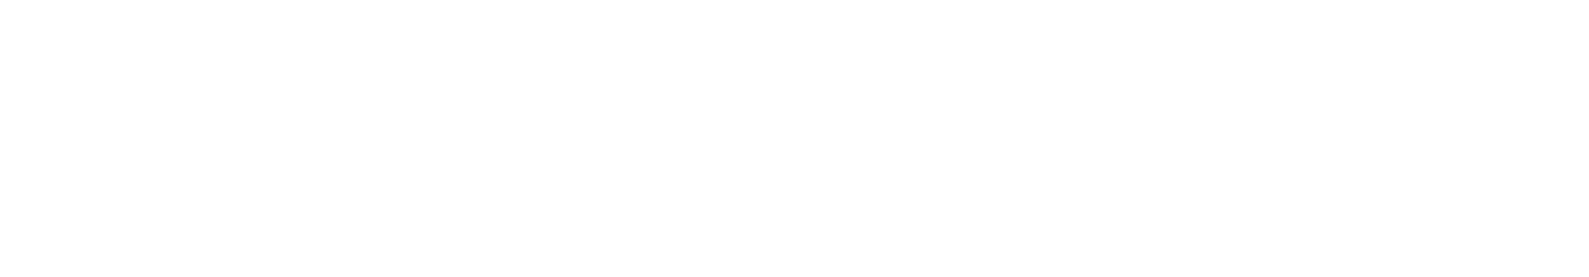 Nomura Holdings logo grand pour les fonds sombres (PNG transparent)